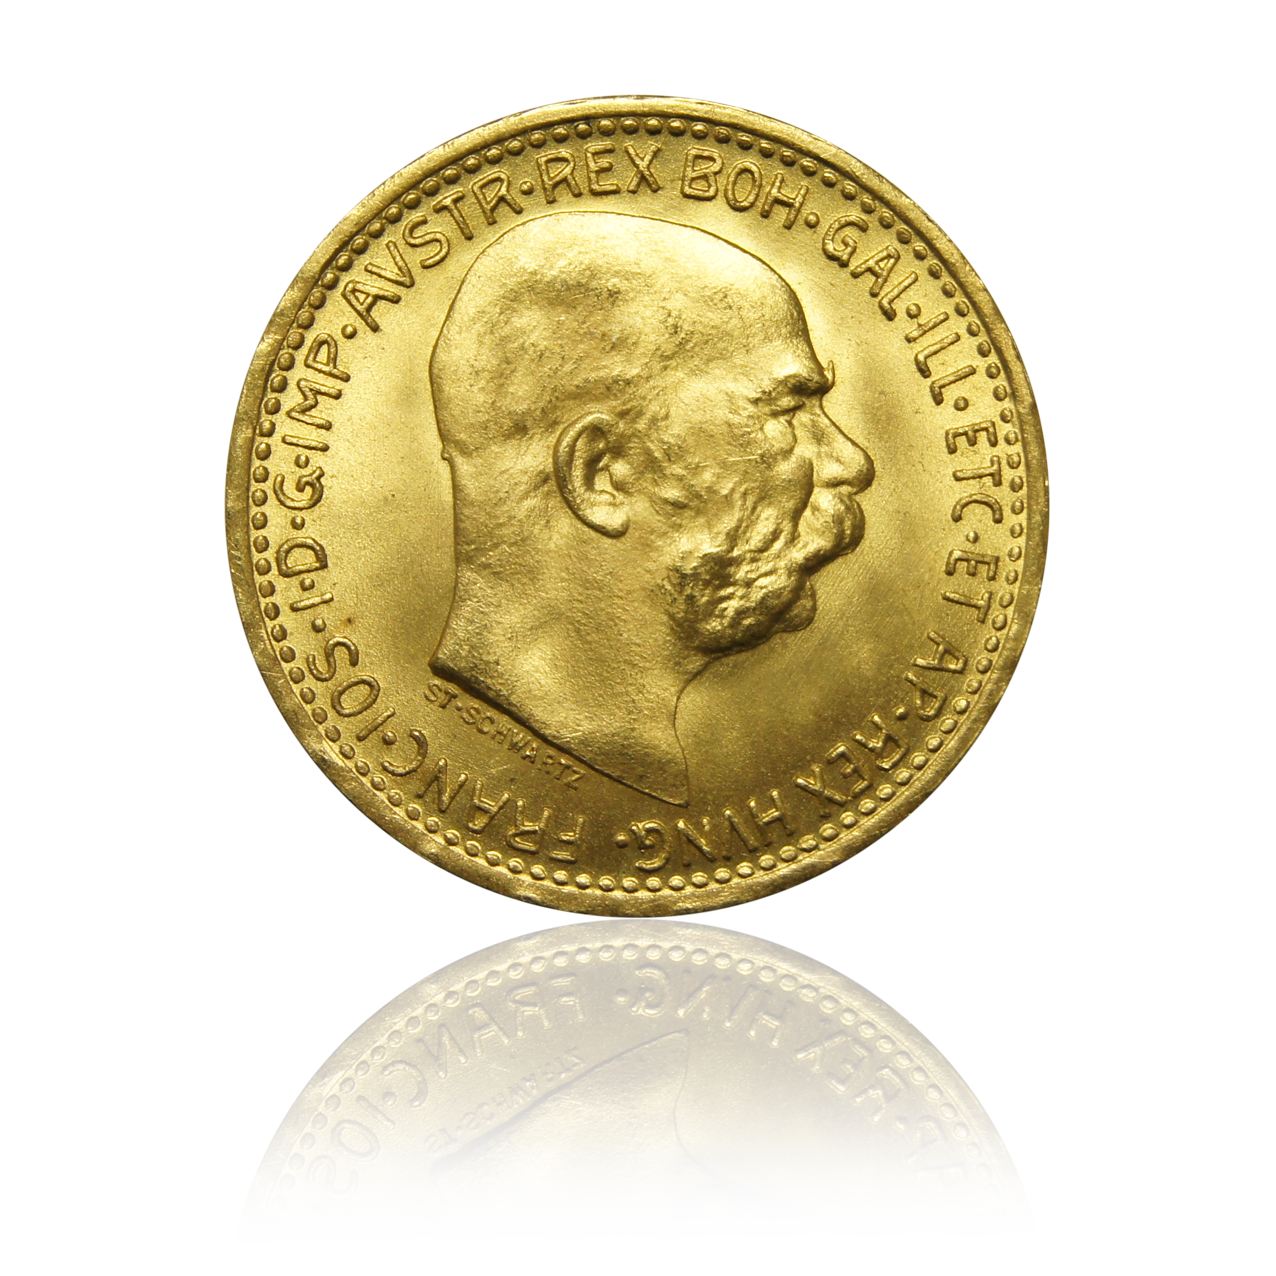 10 Kronen - Austria gold coin